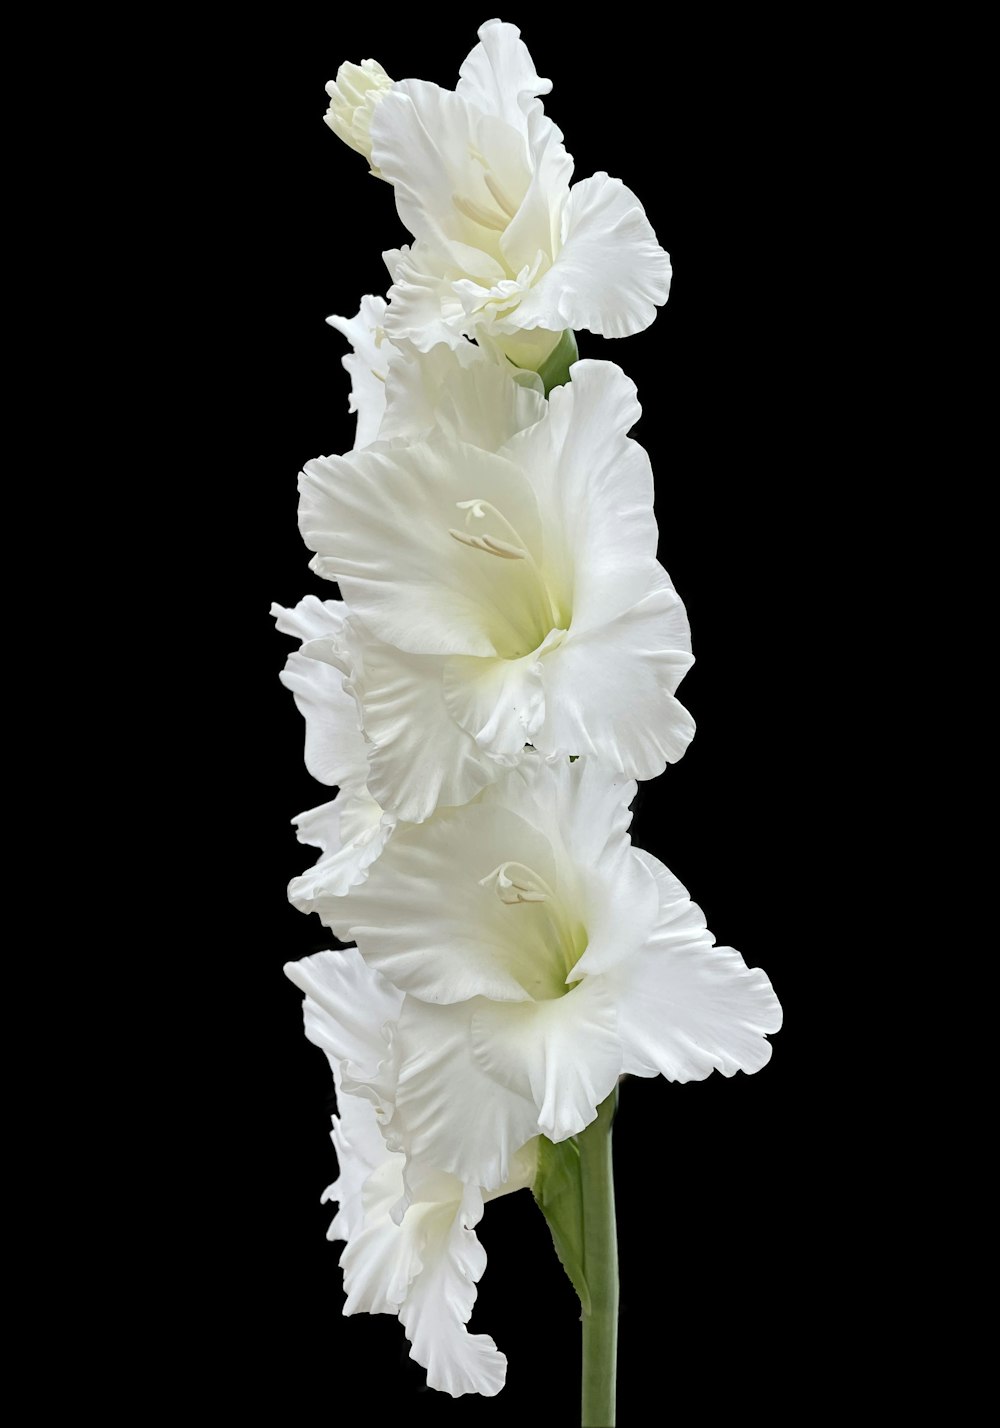 deux fleurs blanches dans un vase sur fond noir